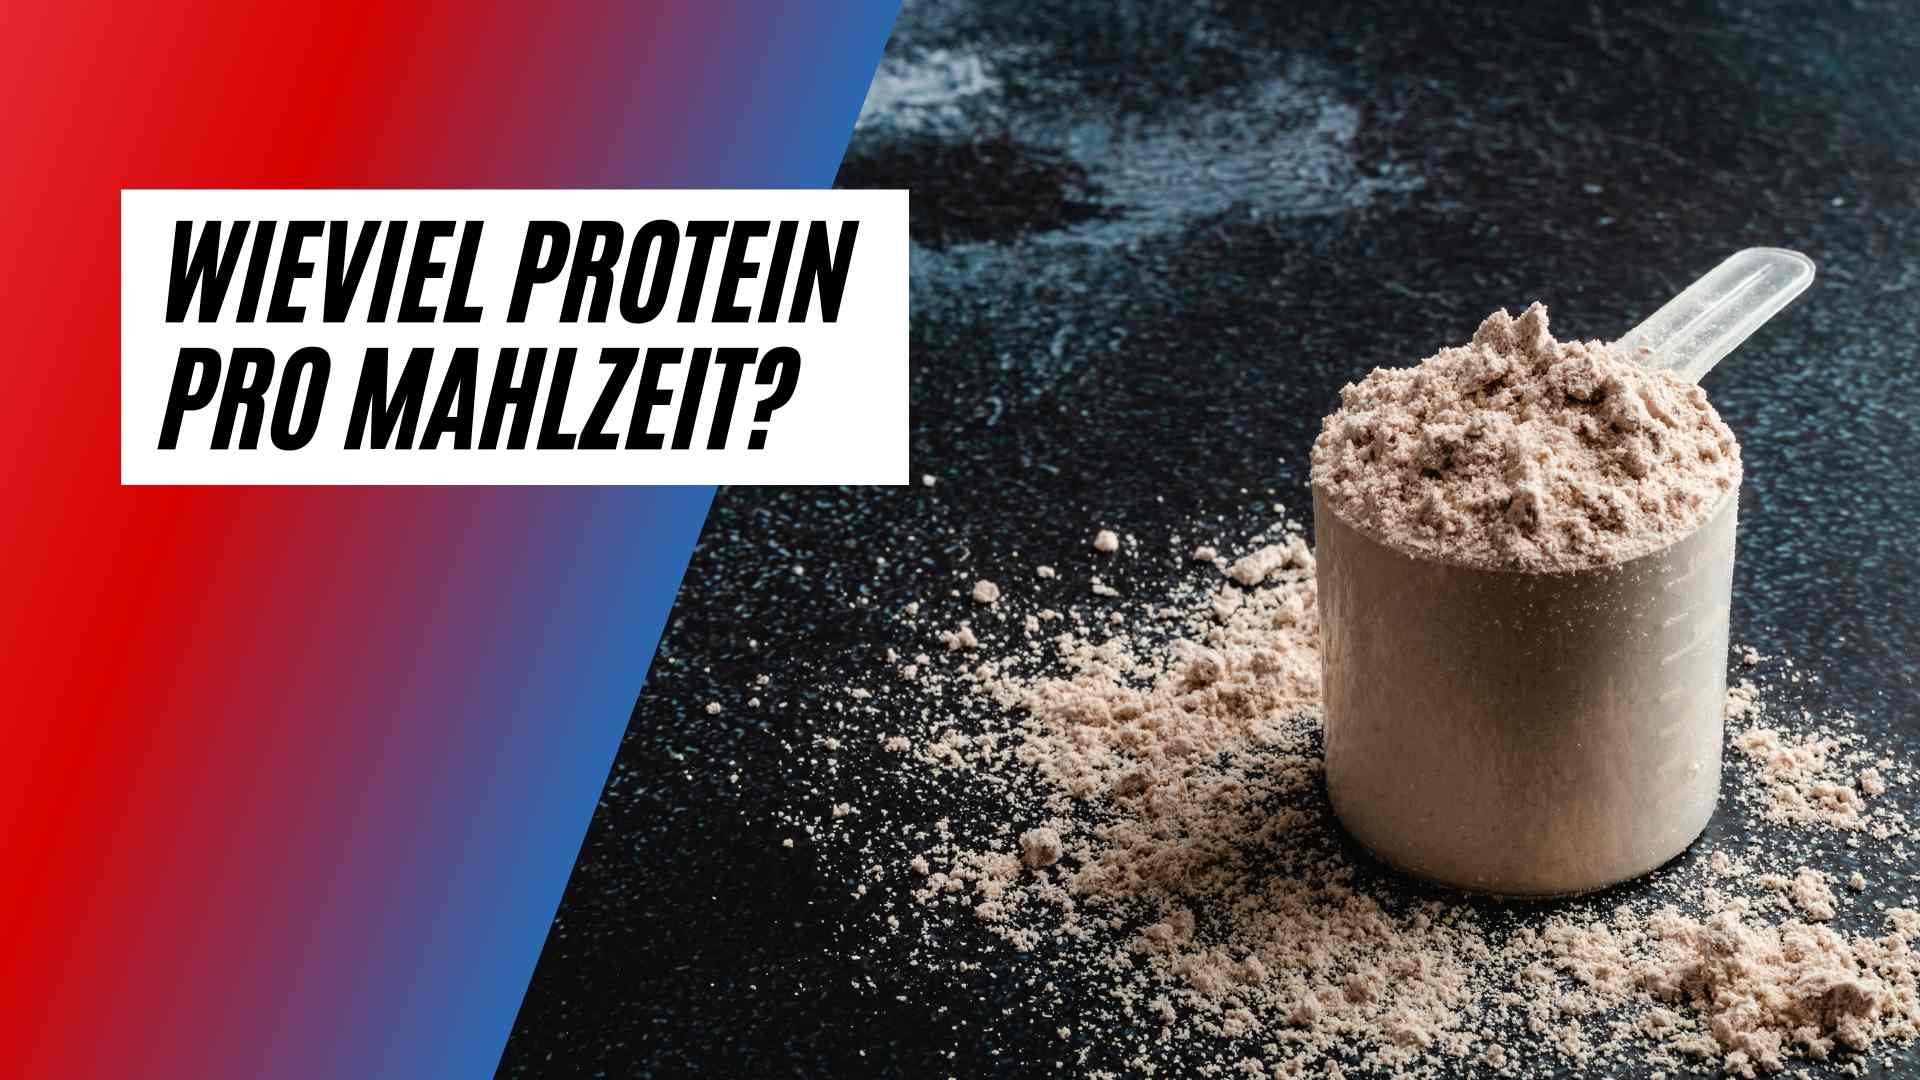 Wieviel Protein kann der Körper pro Mahlzeit aufnehmen?